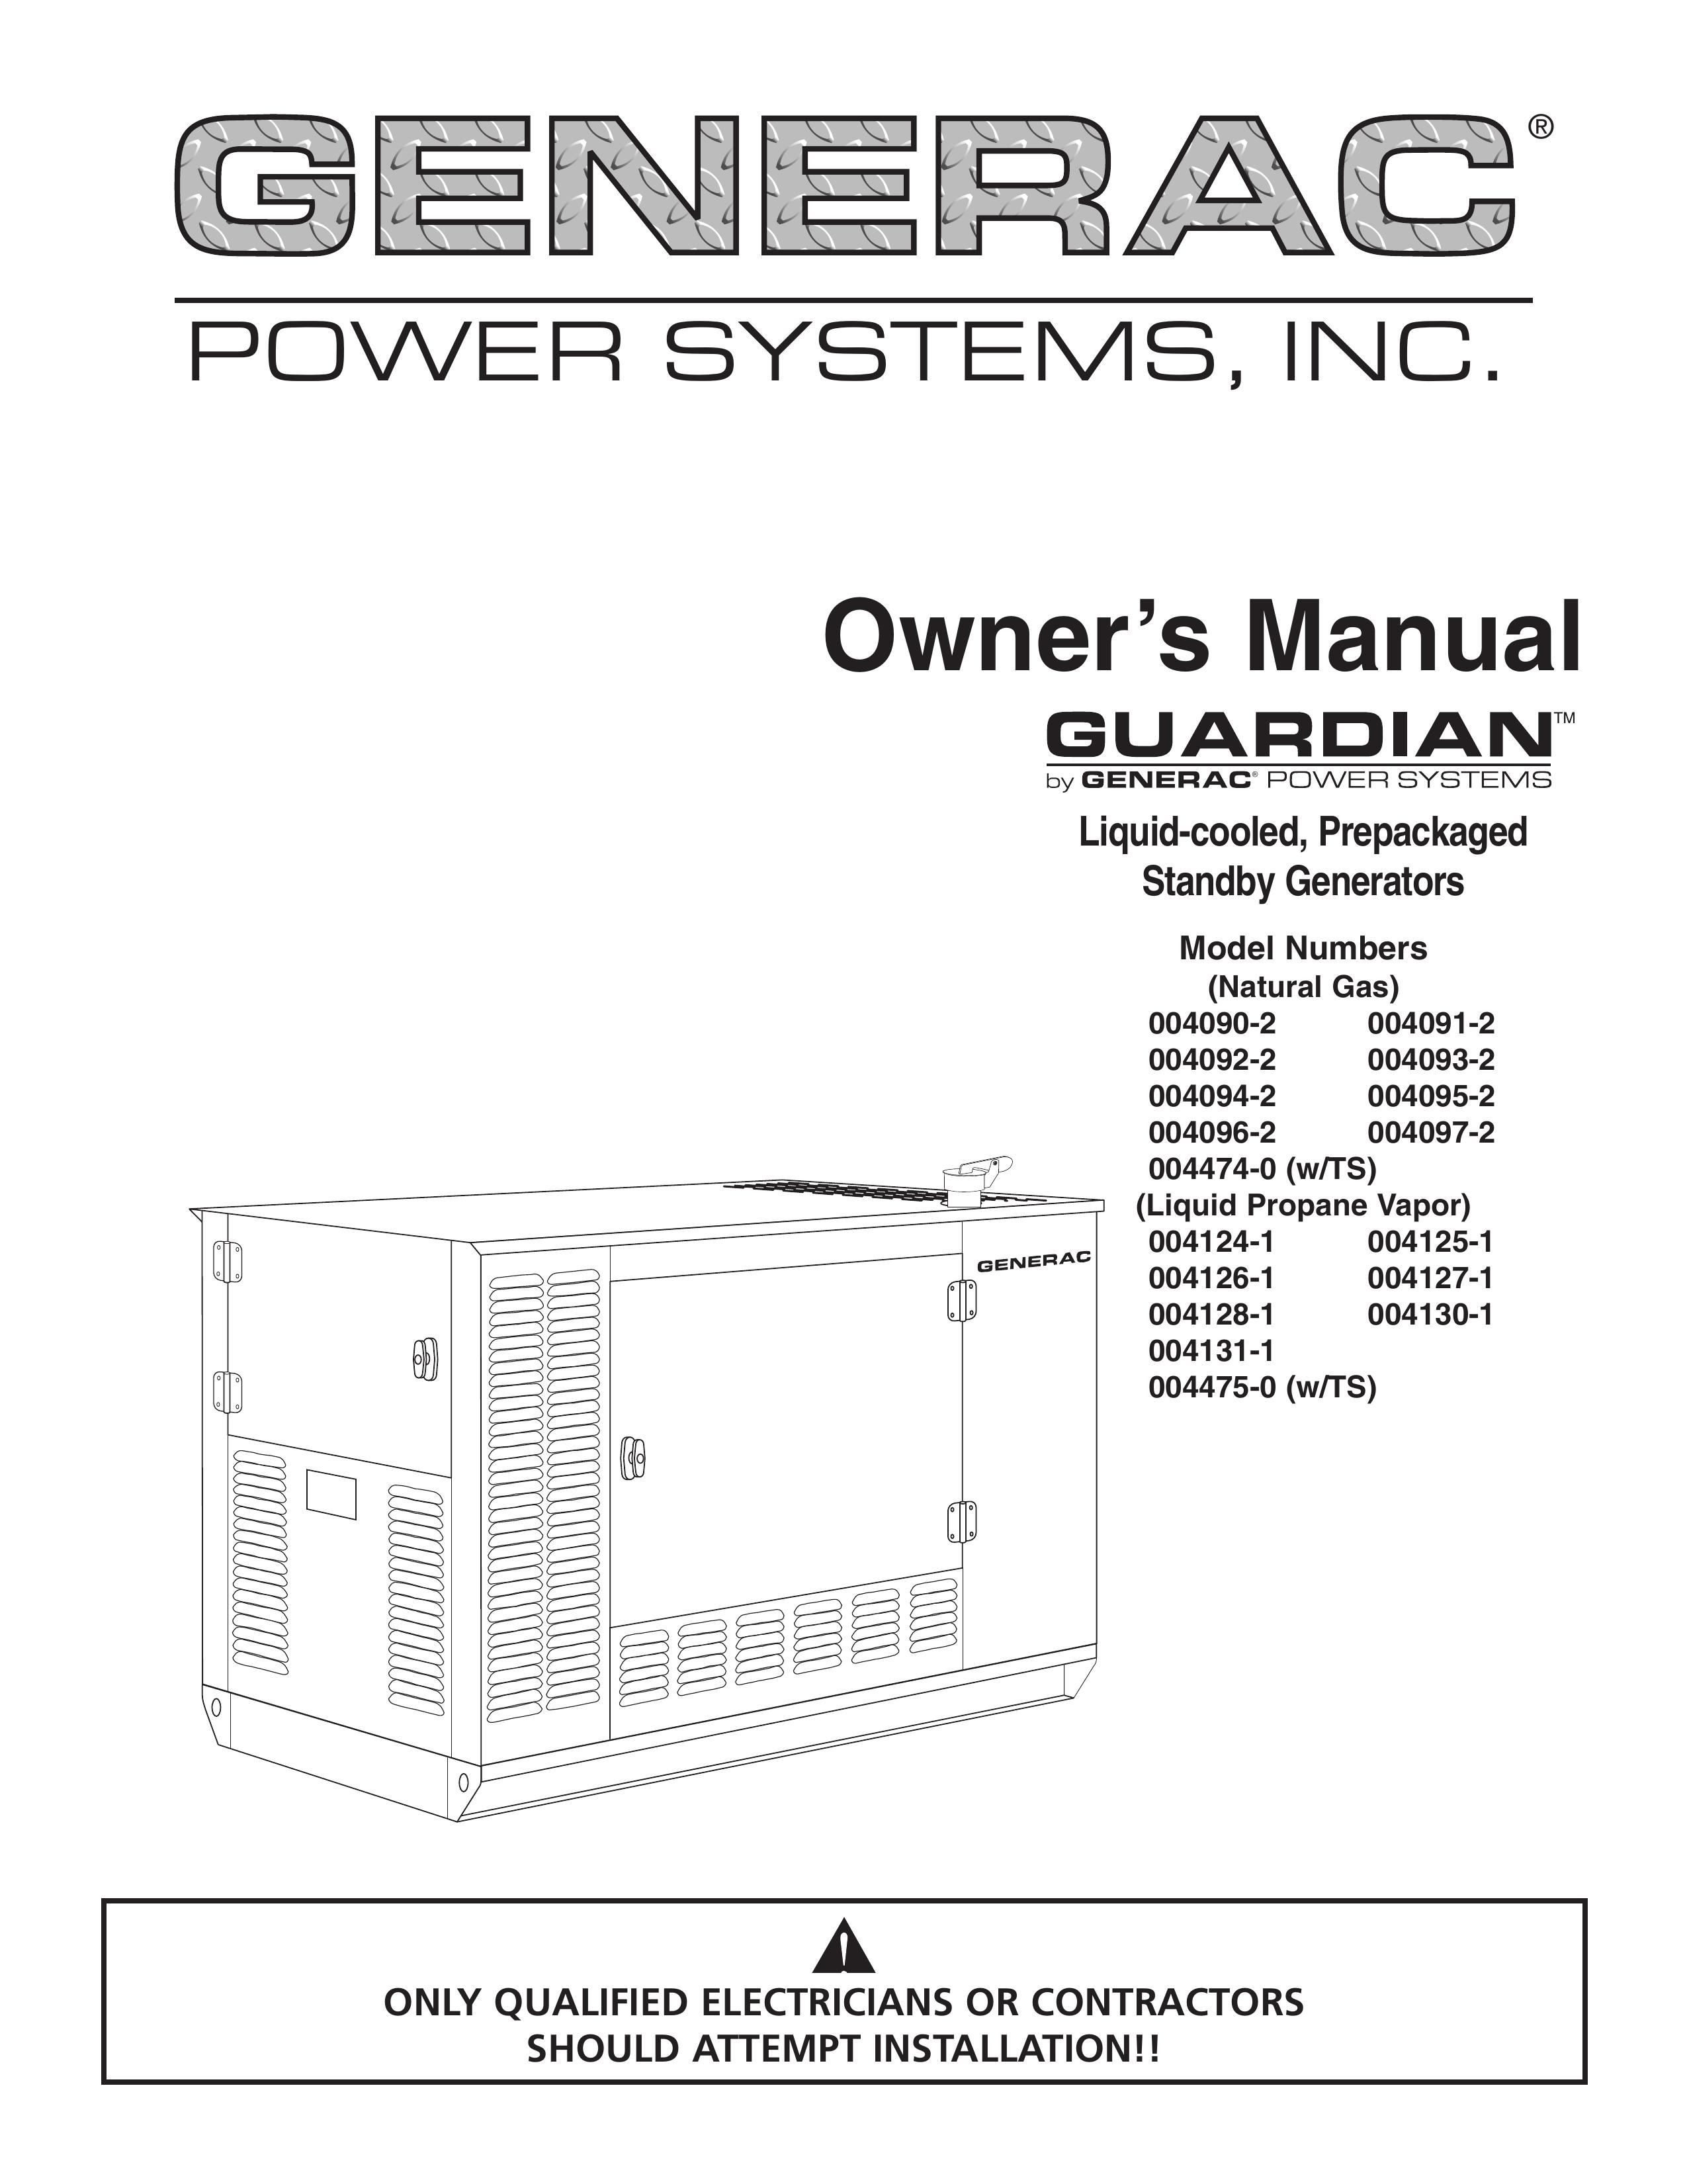 Generac 004090-2, 004091-2, 004092-2, 004093-2, 004094-2, 004095-2, 004096-2, 004097-2, 004474-0 Portable Generator User Manual